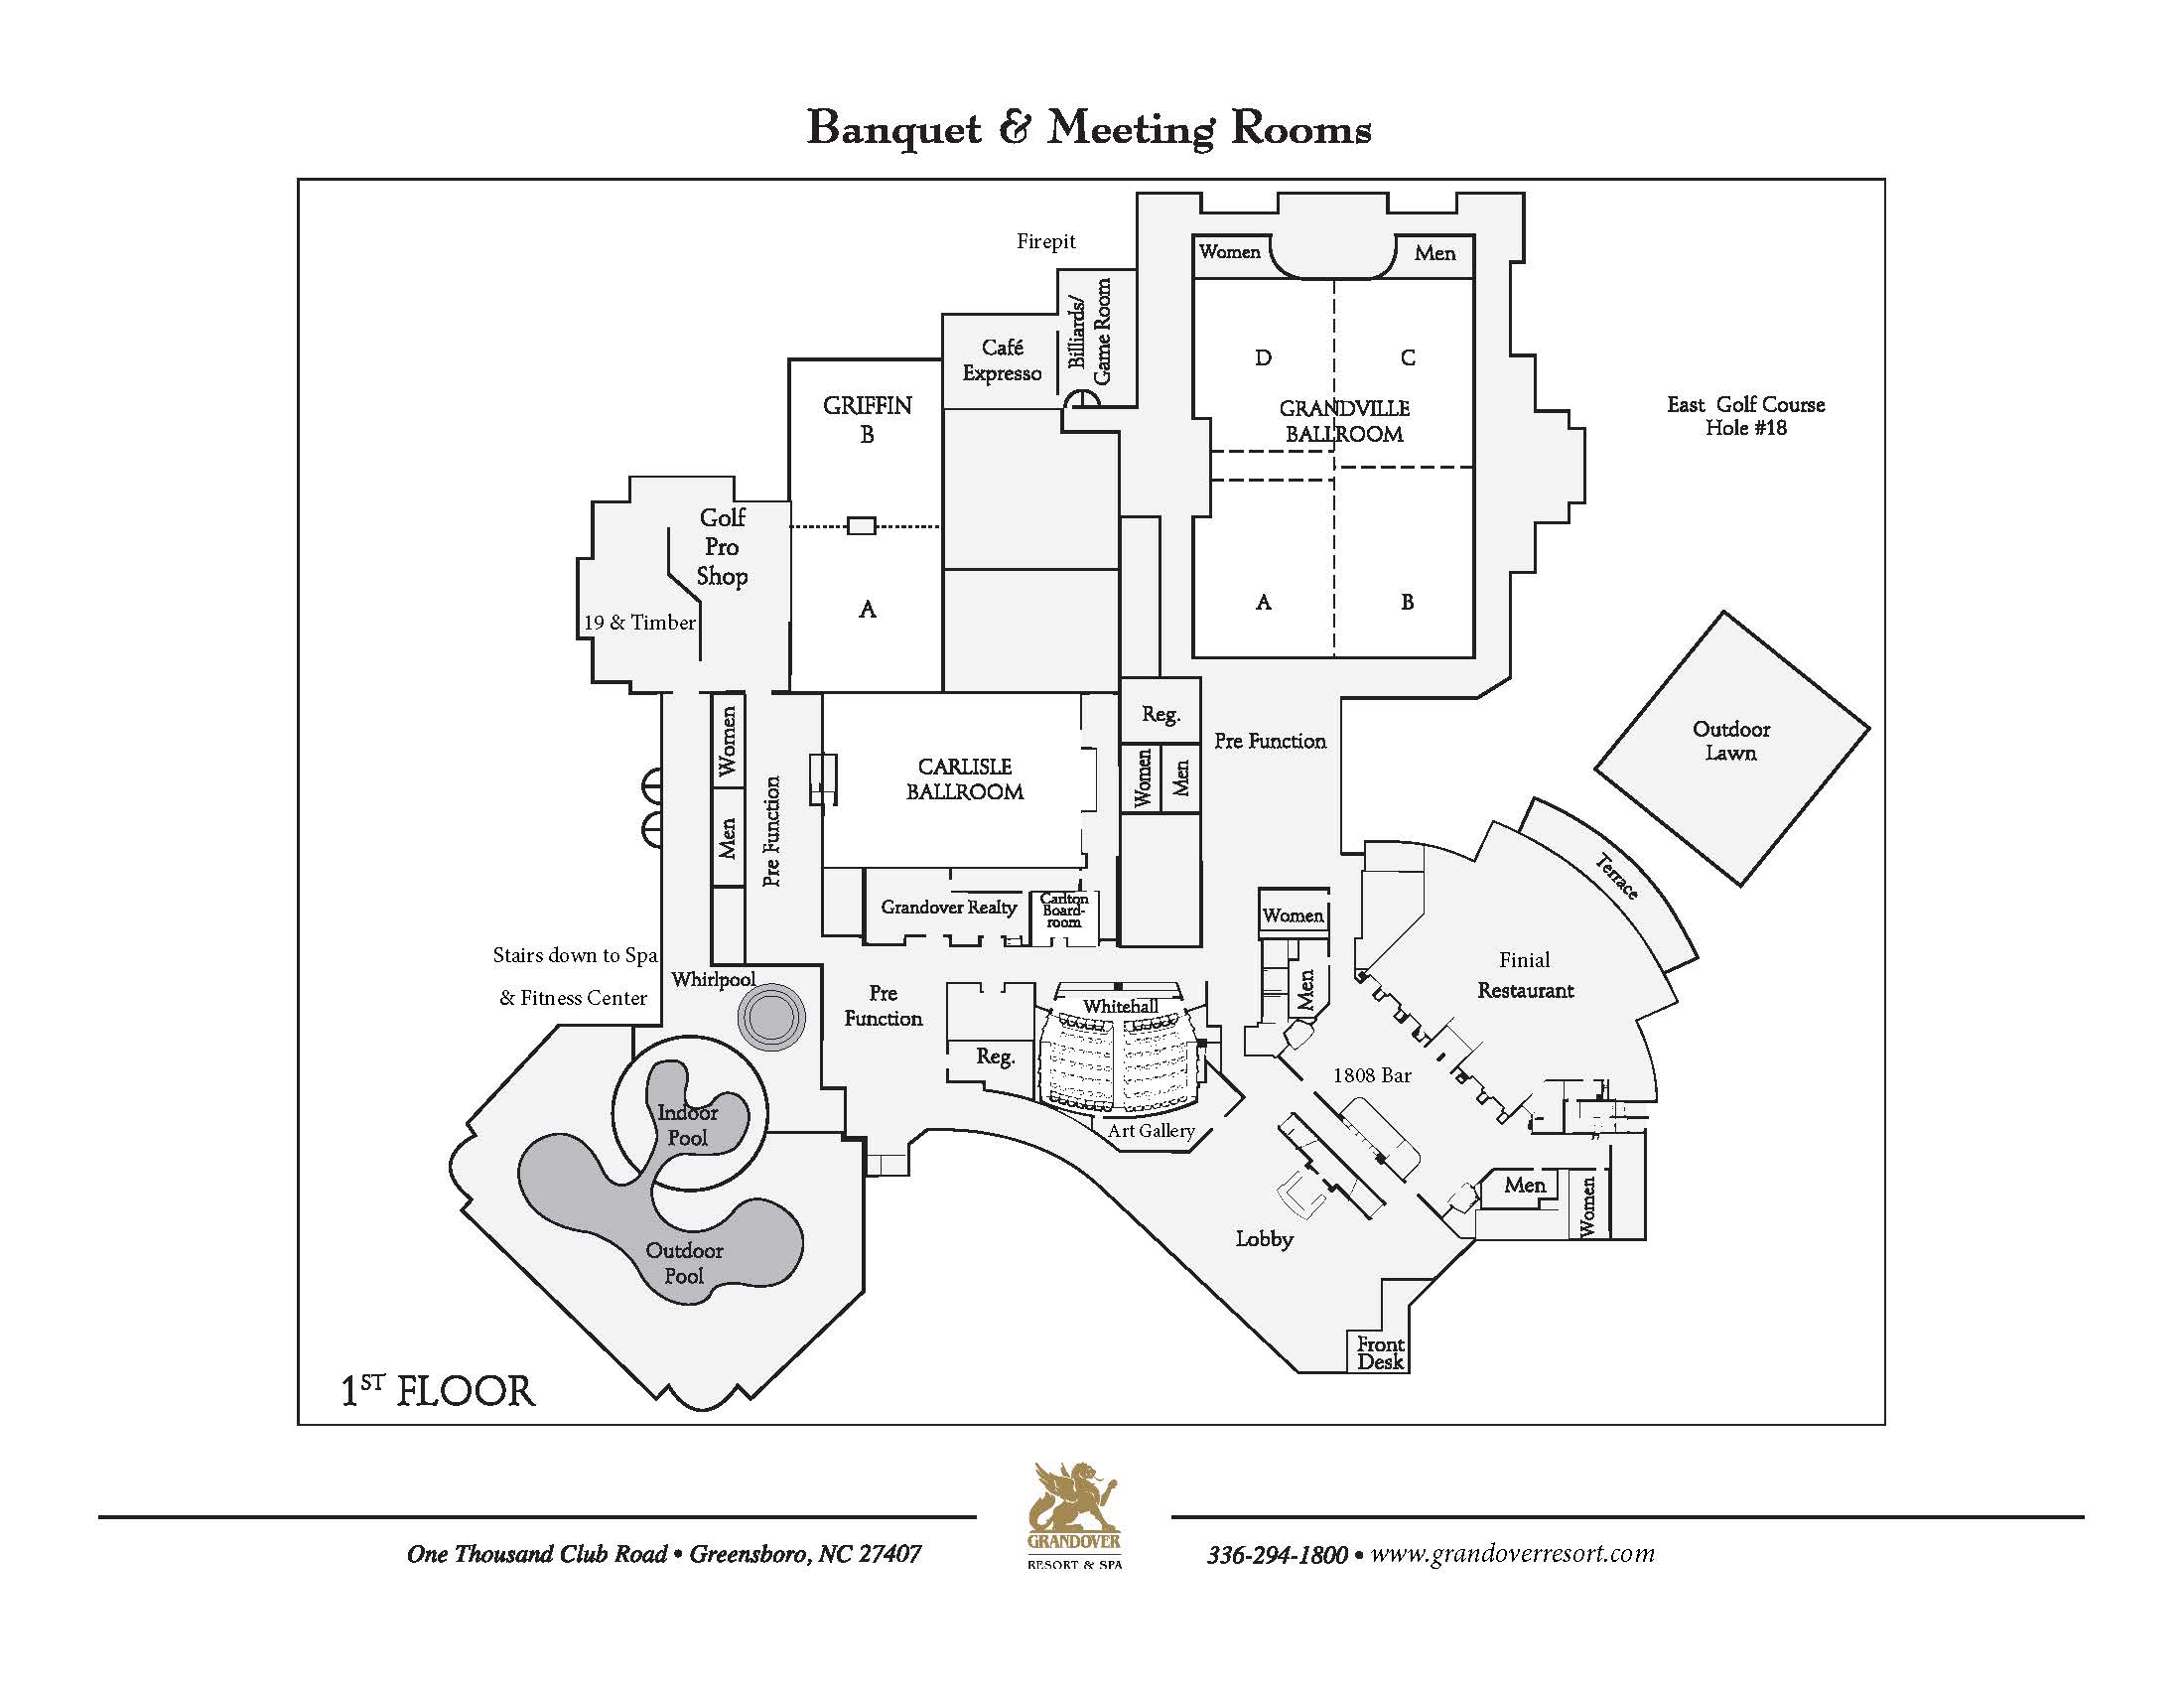 Grandover First Floor Meeting Rooms Floor Plan